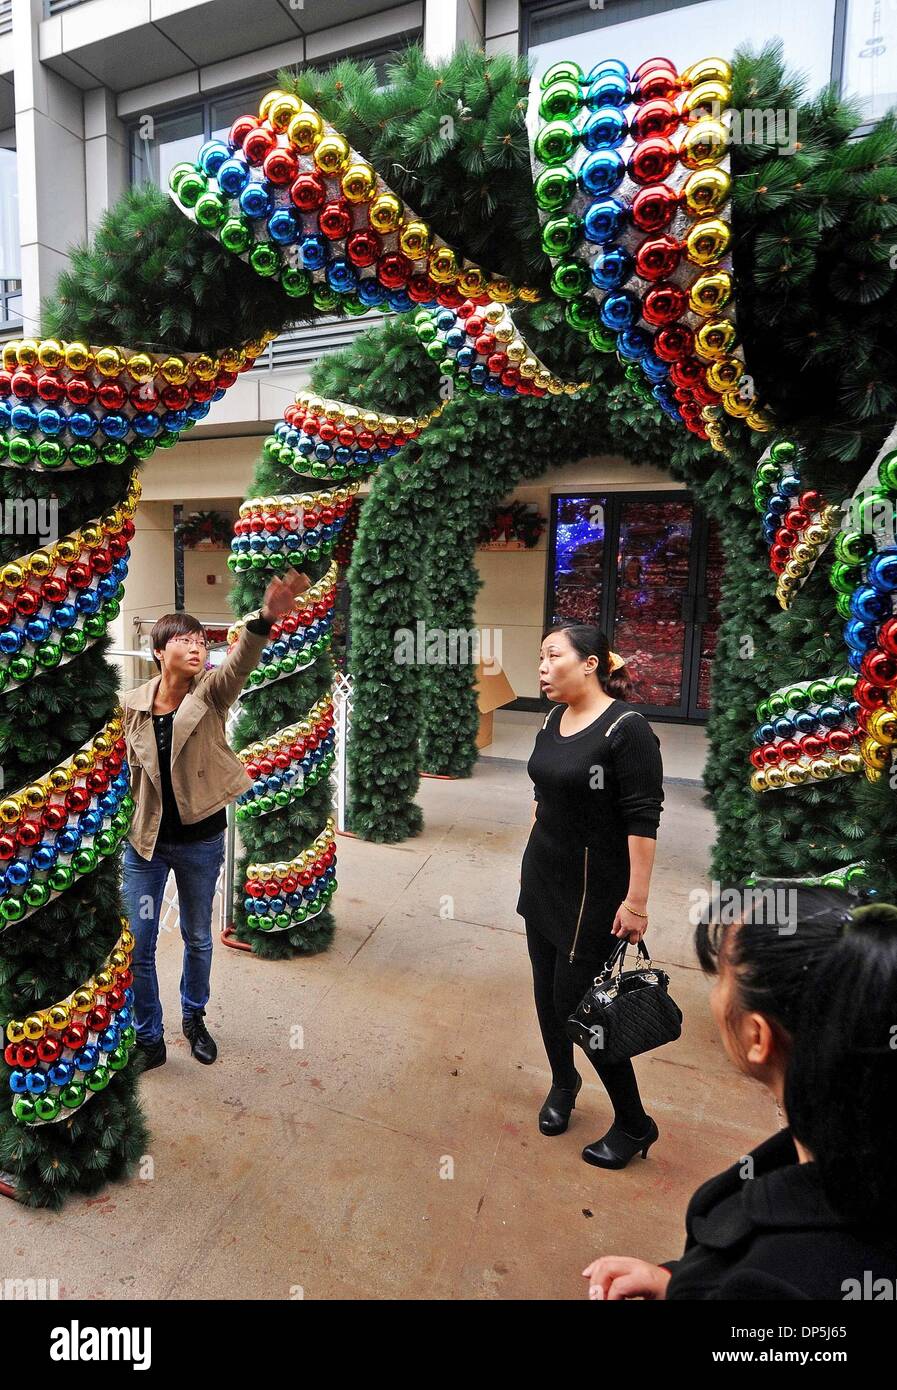 Hangzhou, cinese della Provincia di Zhejiang. 8 Gen, 2014. Un venditore (L) introduce il suo nuovo albero di Natale al China Commodity City in Yiwu, una città rinomata per il suo piccolo commercio di prodotti in Cina orientale della provincia di Zhejiang, nov. 3, 2013. I prodotti di base la città mercato del fatturato, i cui vertici i mercati specializzati in tutto il paese per 23 anni, ha raggiunto 68,3 miliardi di yuan (11,28 miliardi di dollari) nel 2013, fino 17.76 per cento anno su anno, secondo le statistiche più recenti. © Tan Jin/Xinhua/Alamy Live News Foto Stock